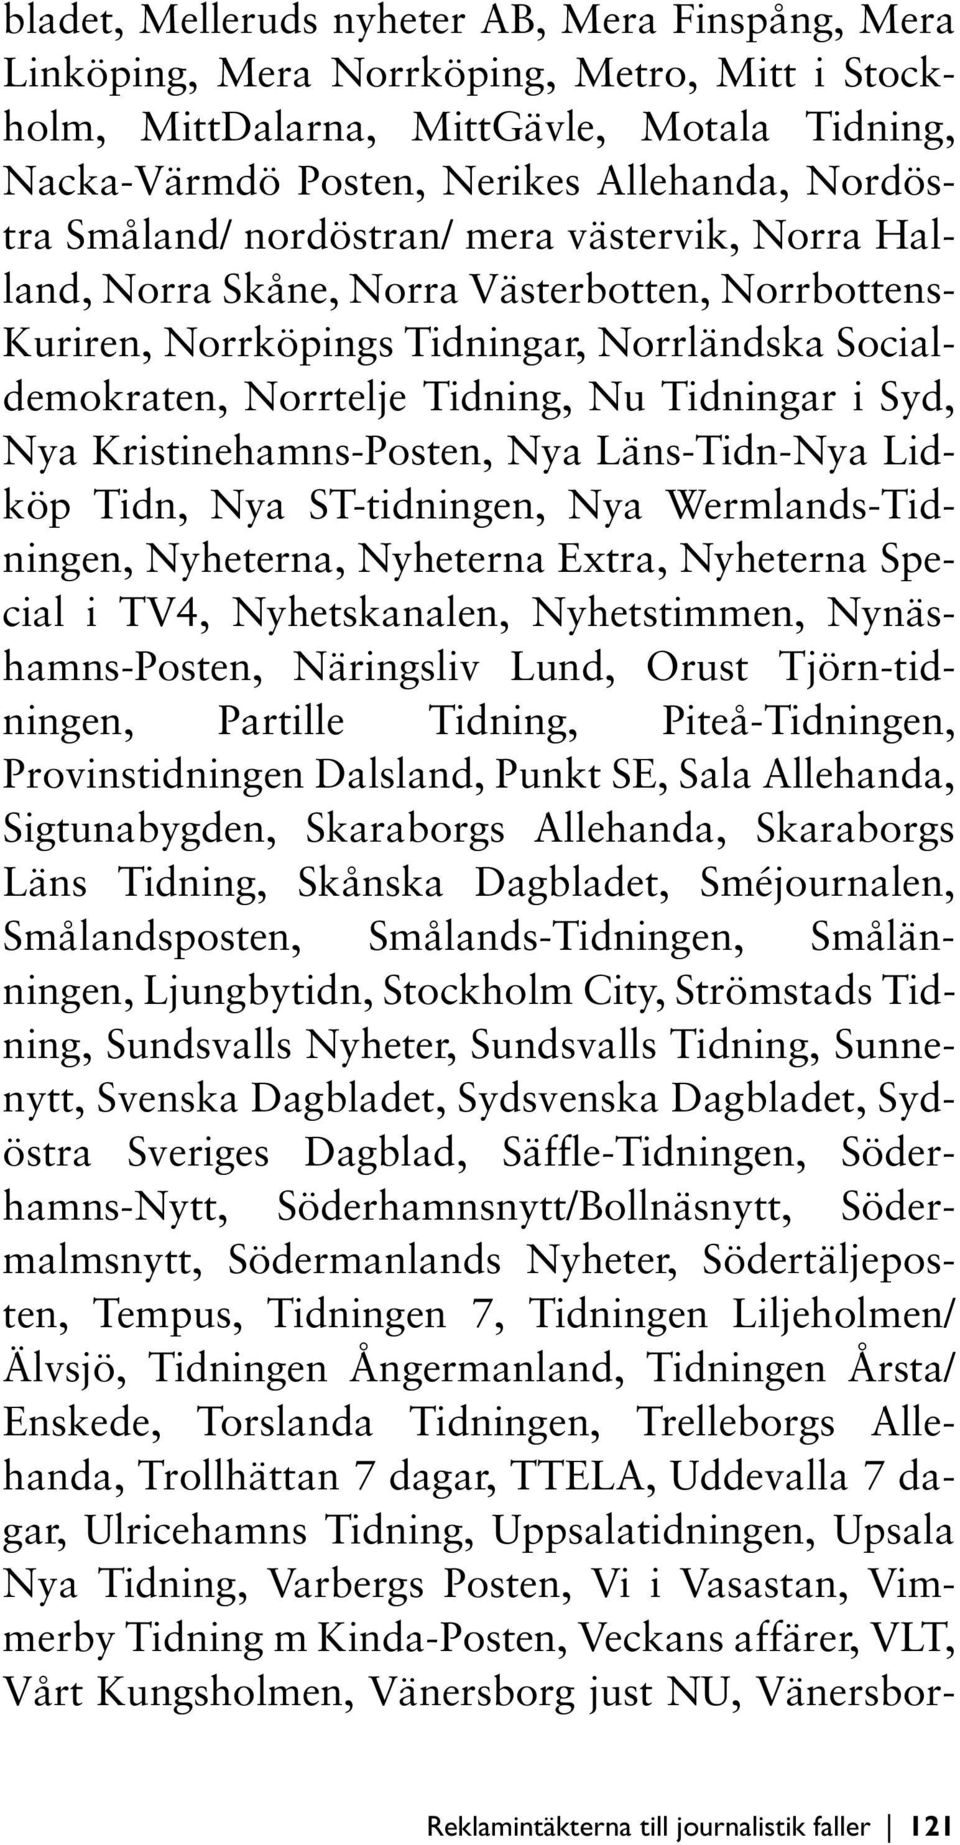 Nya Kristinehamns-Posten, Nya Läns-Tidn-Nya Lidköp Tidn, Nya ST-tidningen, Nya Wermlands-Tidningen, Nyheterna, Nyheterna Extra, Nyheterna Special i TV4, Nyhetskanalen, Nyhetstimmen,